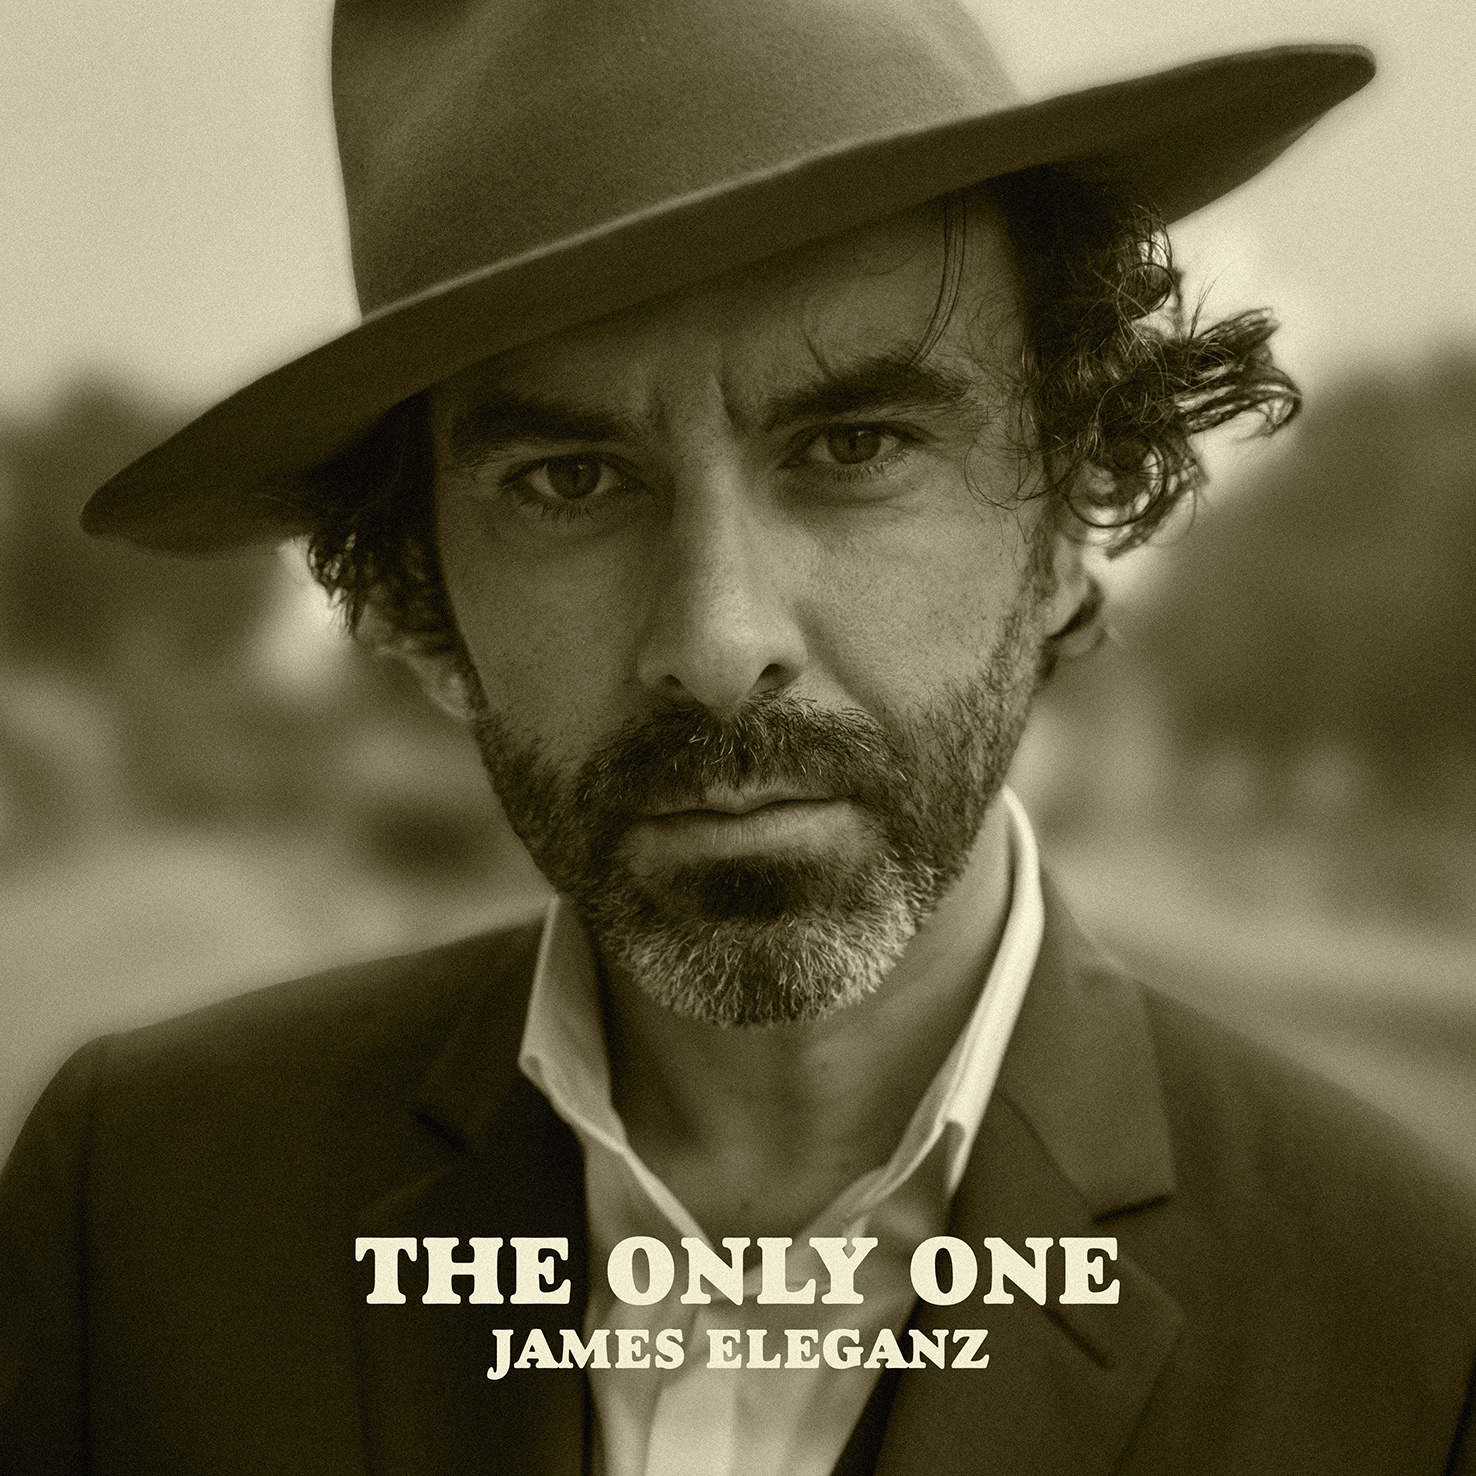 James Eleganz s’entoure de légendes avec son album The Only One